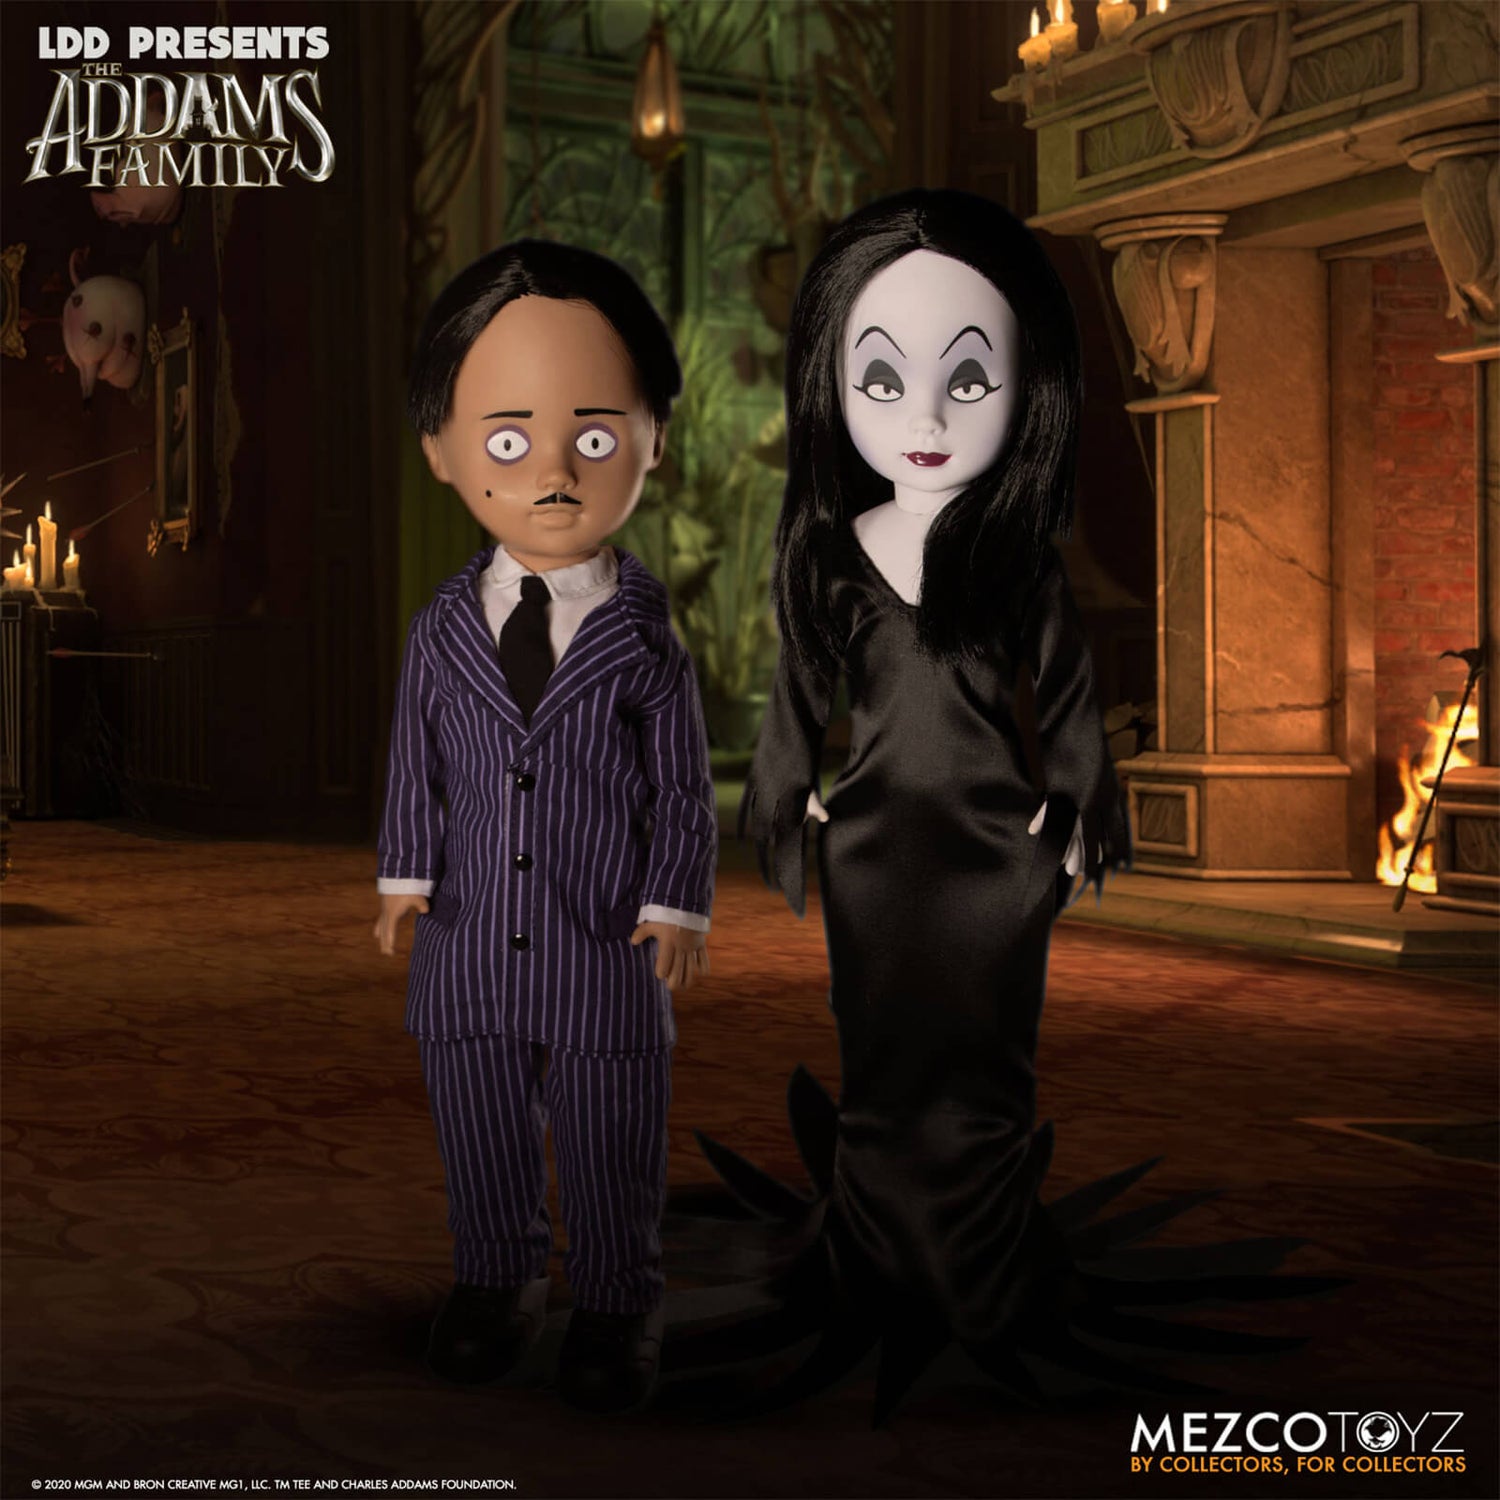 Mezco LDD Présente La Famille Addams Poupées Gomez et Morticia Pack de 2